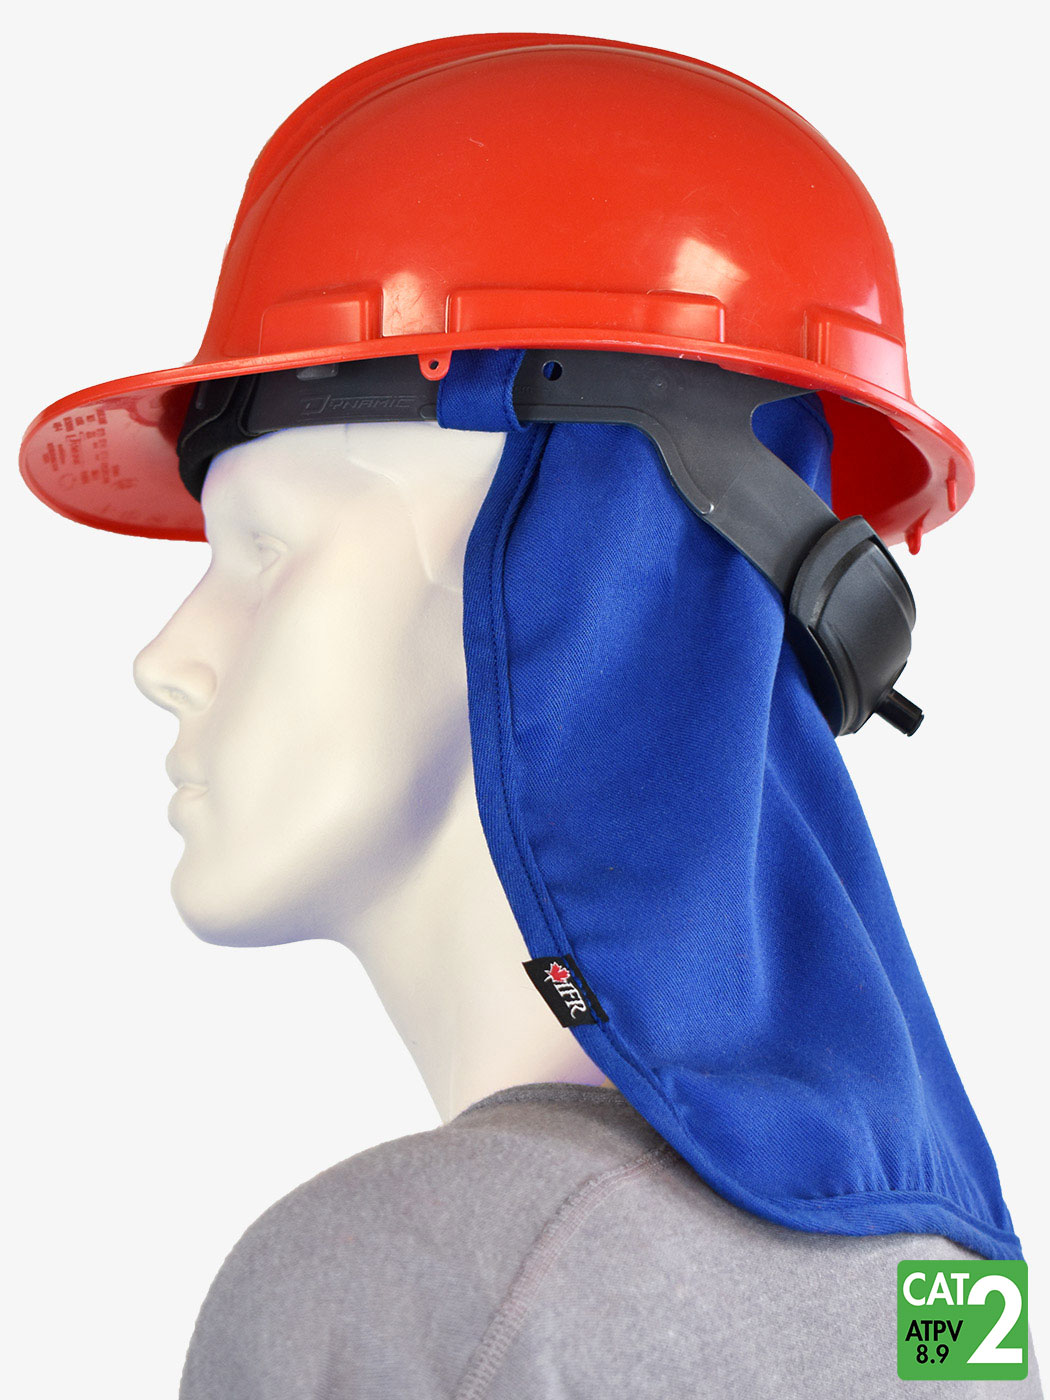 FR Cooling Hard Hat Liner & Neck shade, FR & NON-FR Cooling Technology, FR Summerwear, FR Head & Neck Wear